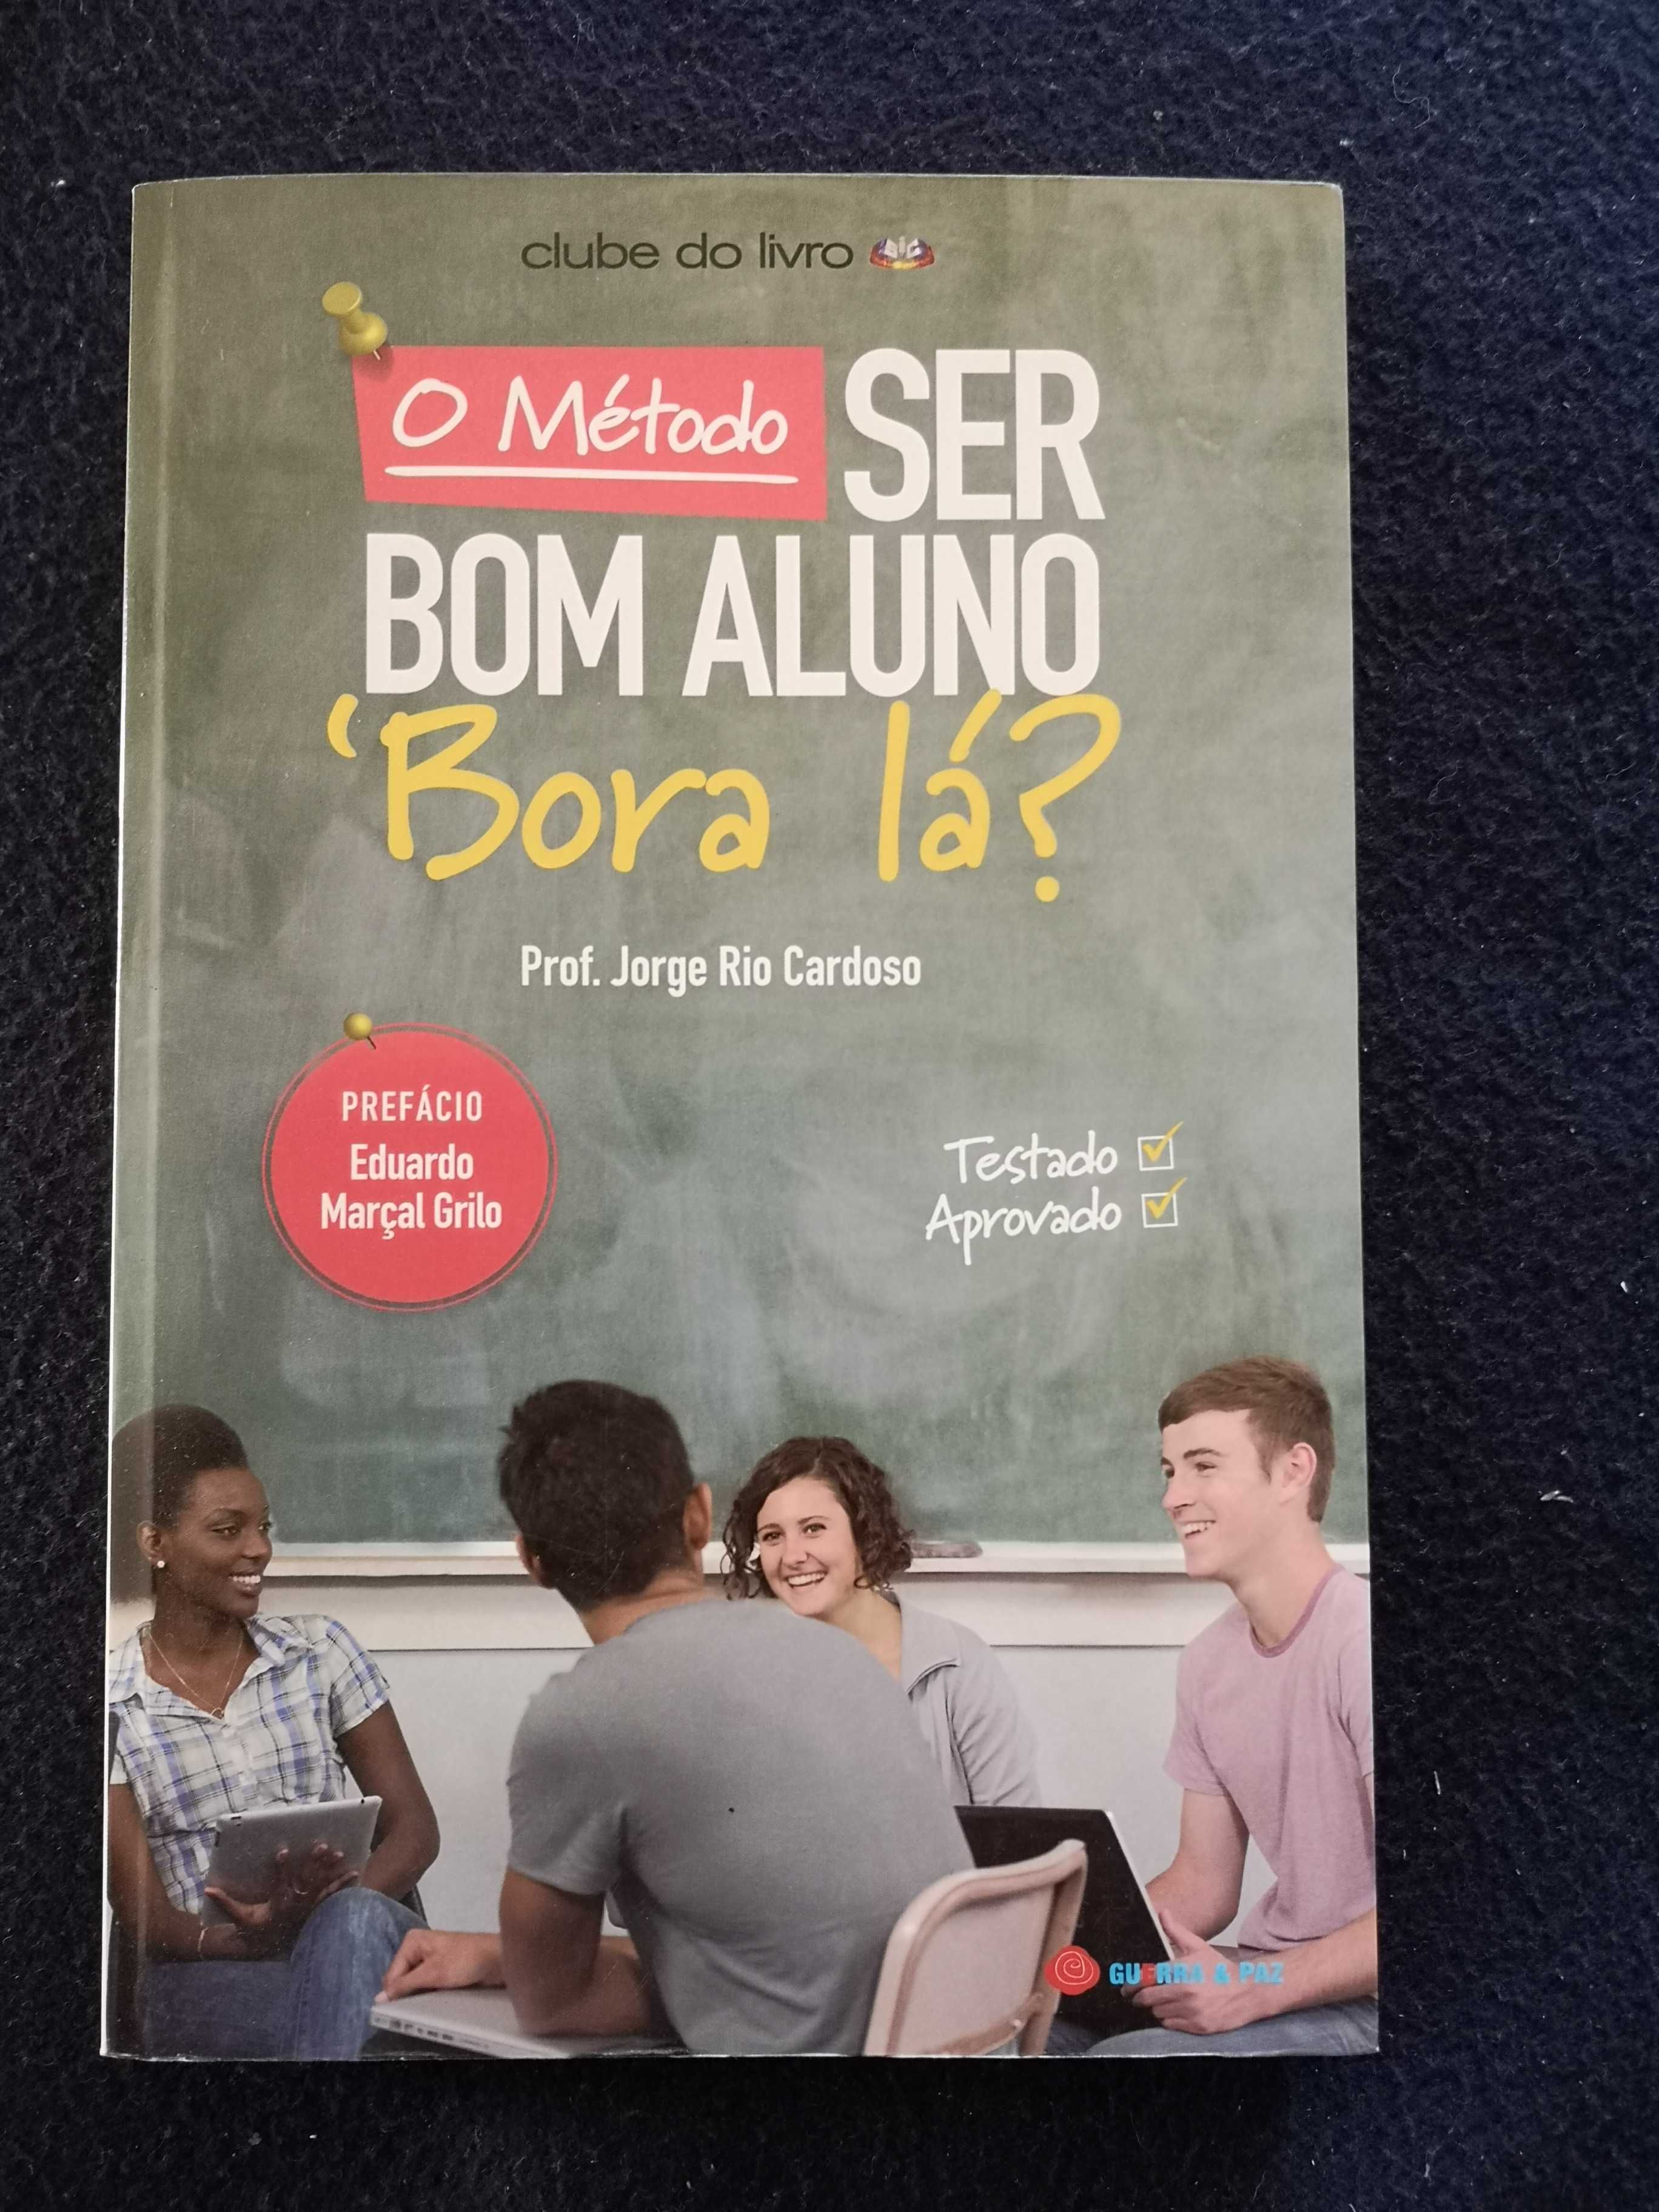 O Método Ser Bom Aluno - 'Bora Lá?